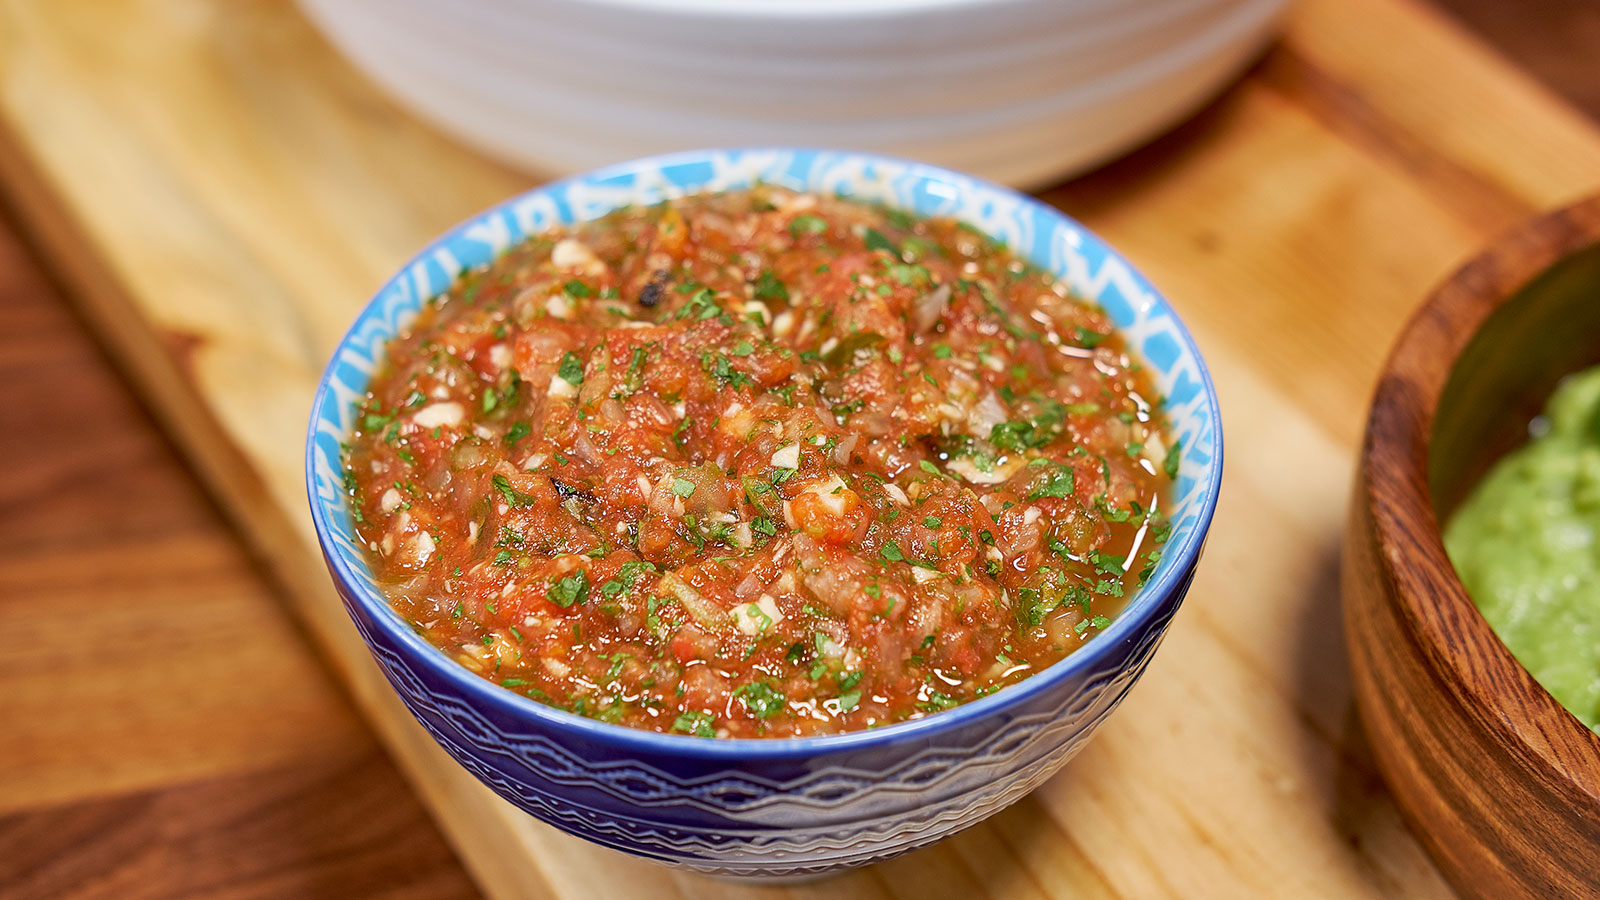 Salsa de tomate asado - Mary Berg - Receta - Canal Cocina